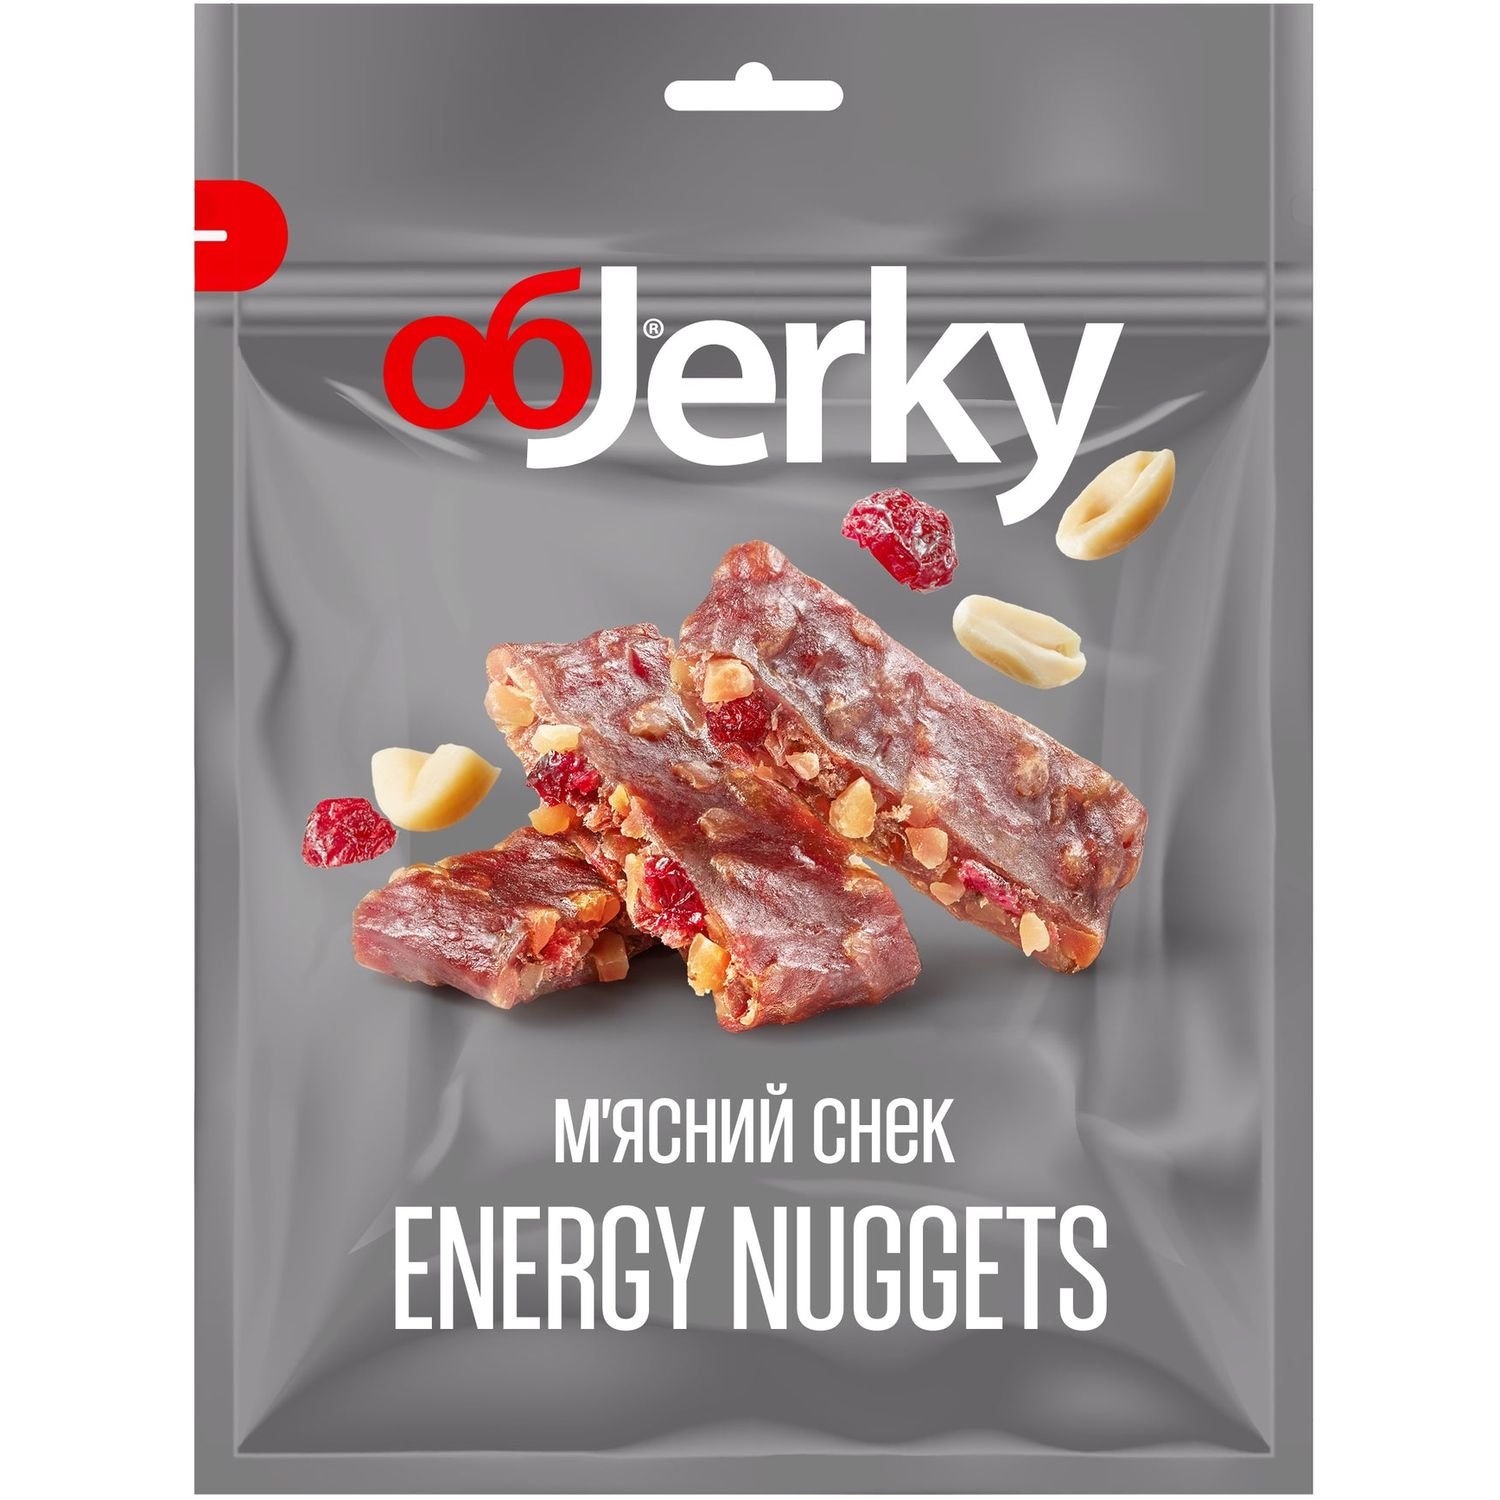 М'ясний снек Objerky Energy nuggets яловичина в'ялена 50 г (601122) - фото 1